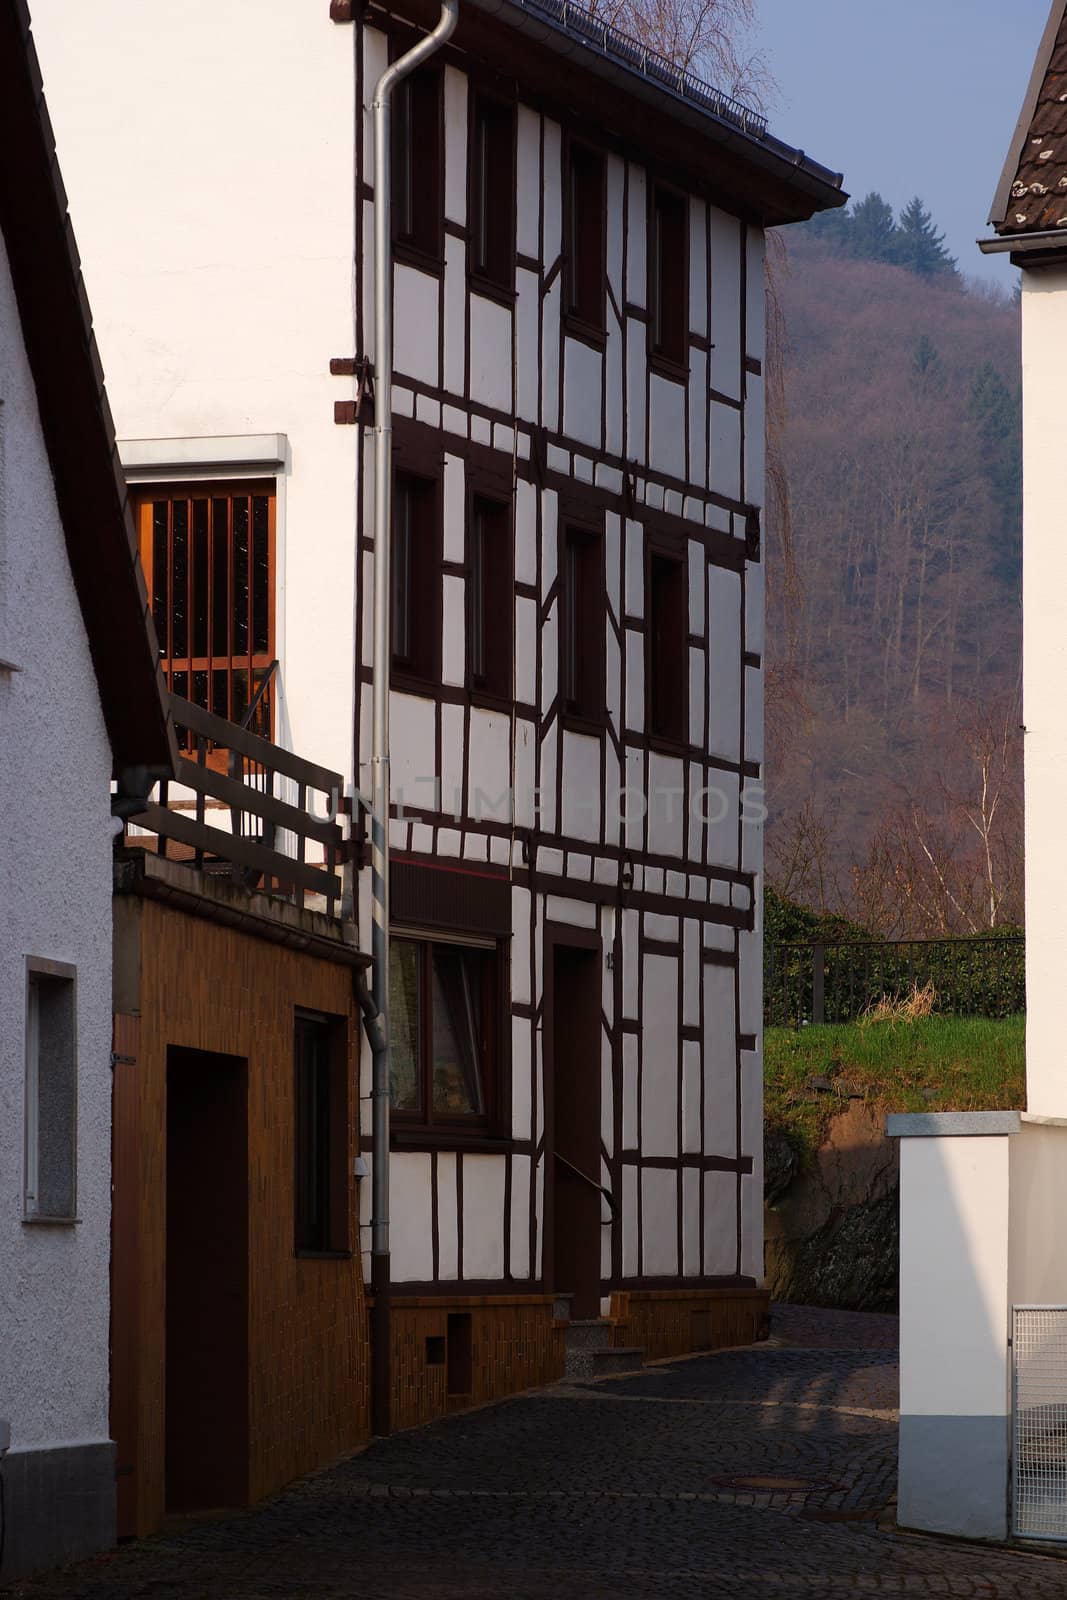 Traditional German house by saasemen